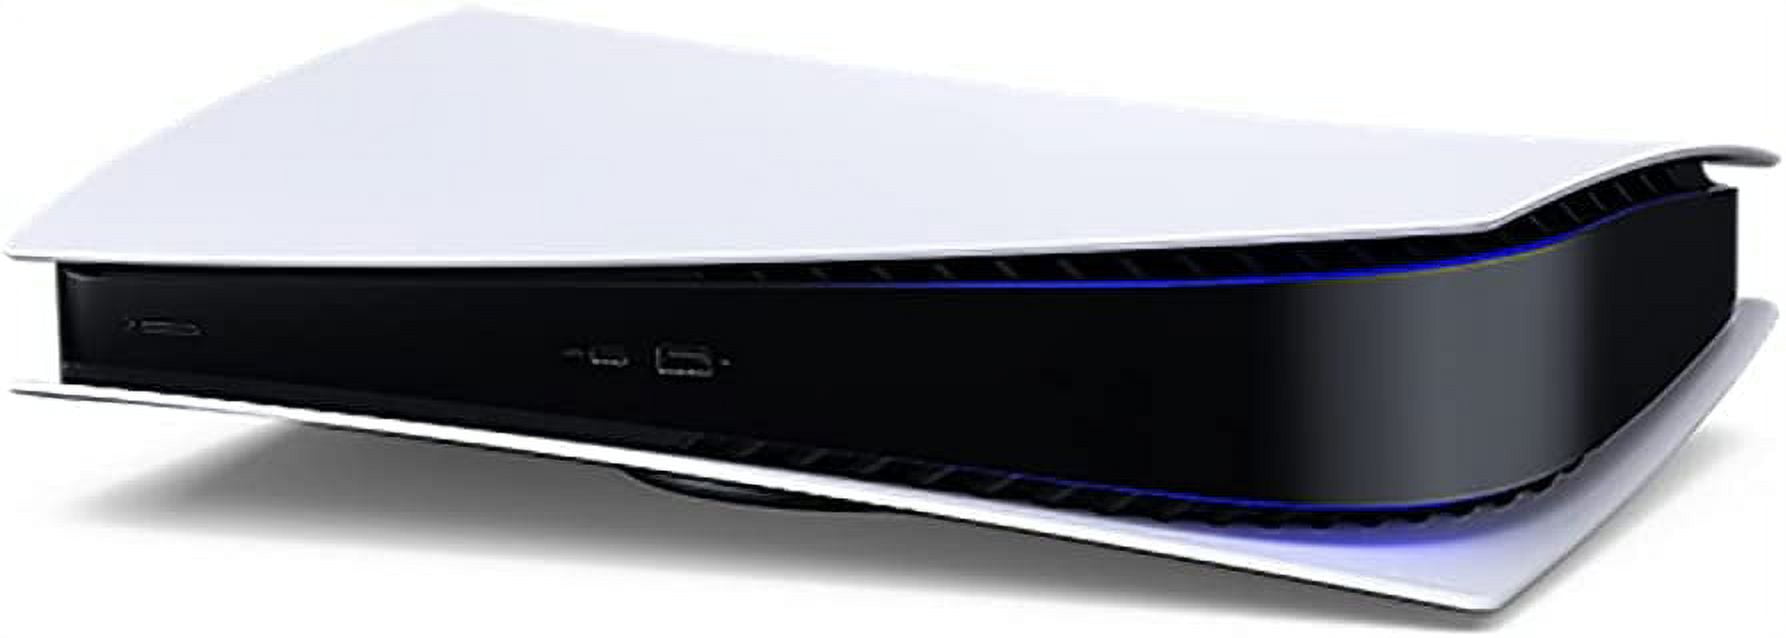 Sony Playstation 5 - Consola PS5 versión de disco - 4K-TV Gaming, salida 8K  de 120 Hz, 16 GB GDDR6, 825 GB SSD, WiFi 6, Bluetooth 5.1 (renovado)